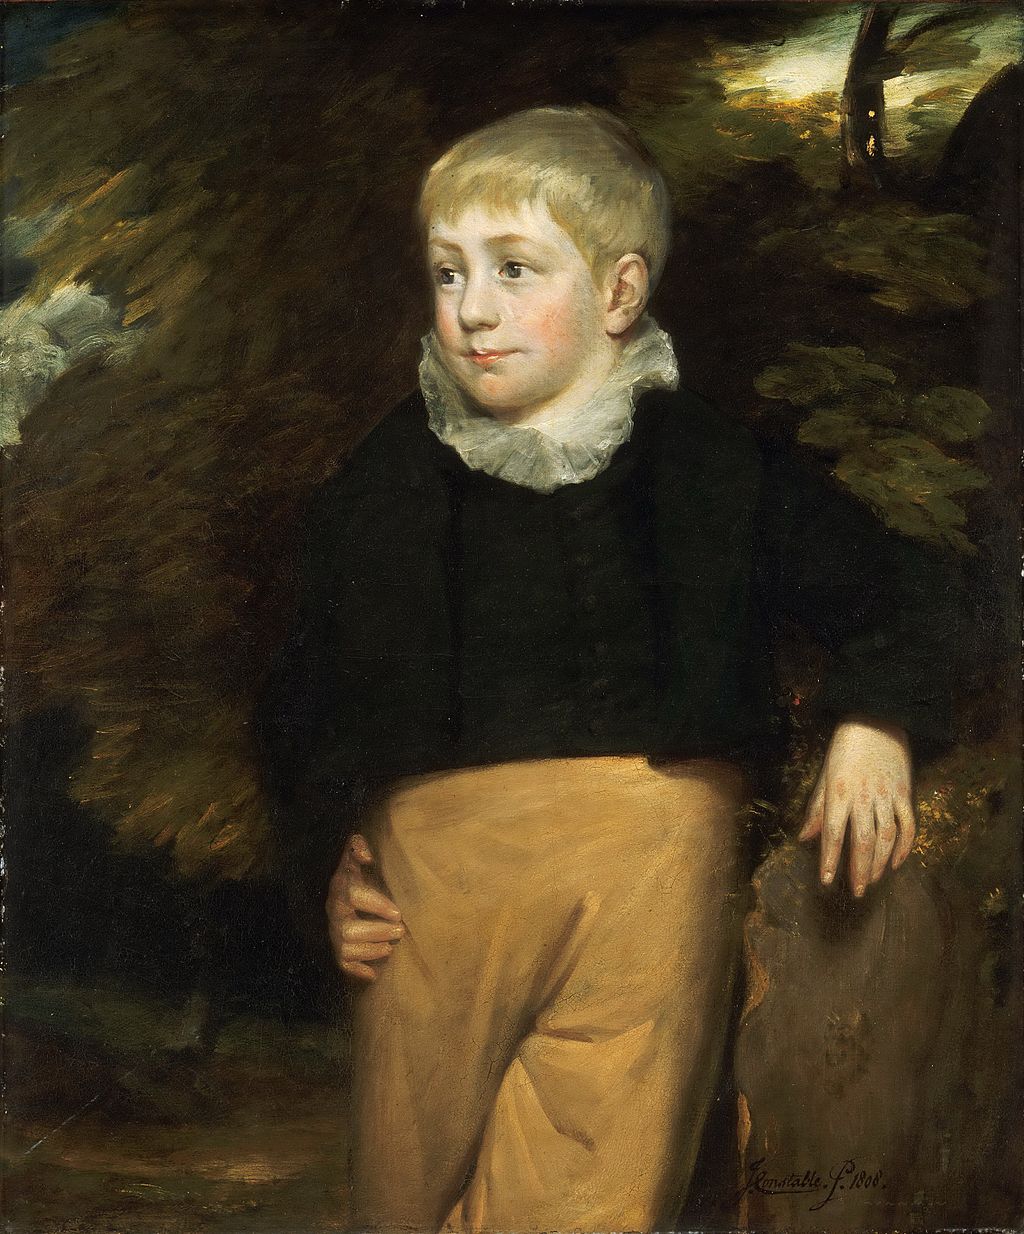 La imagen muestra un niño de época de familia adinerada.